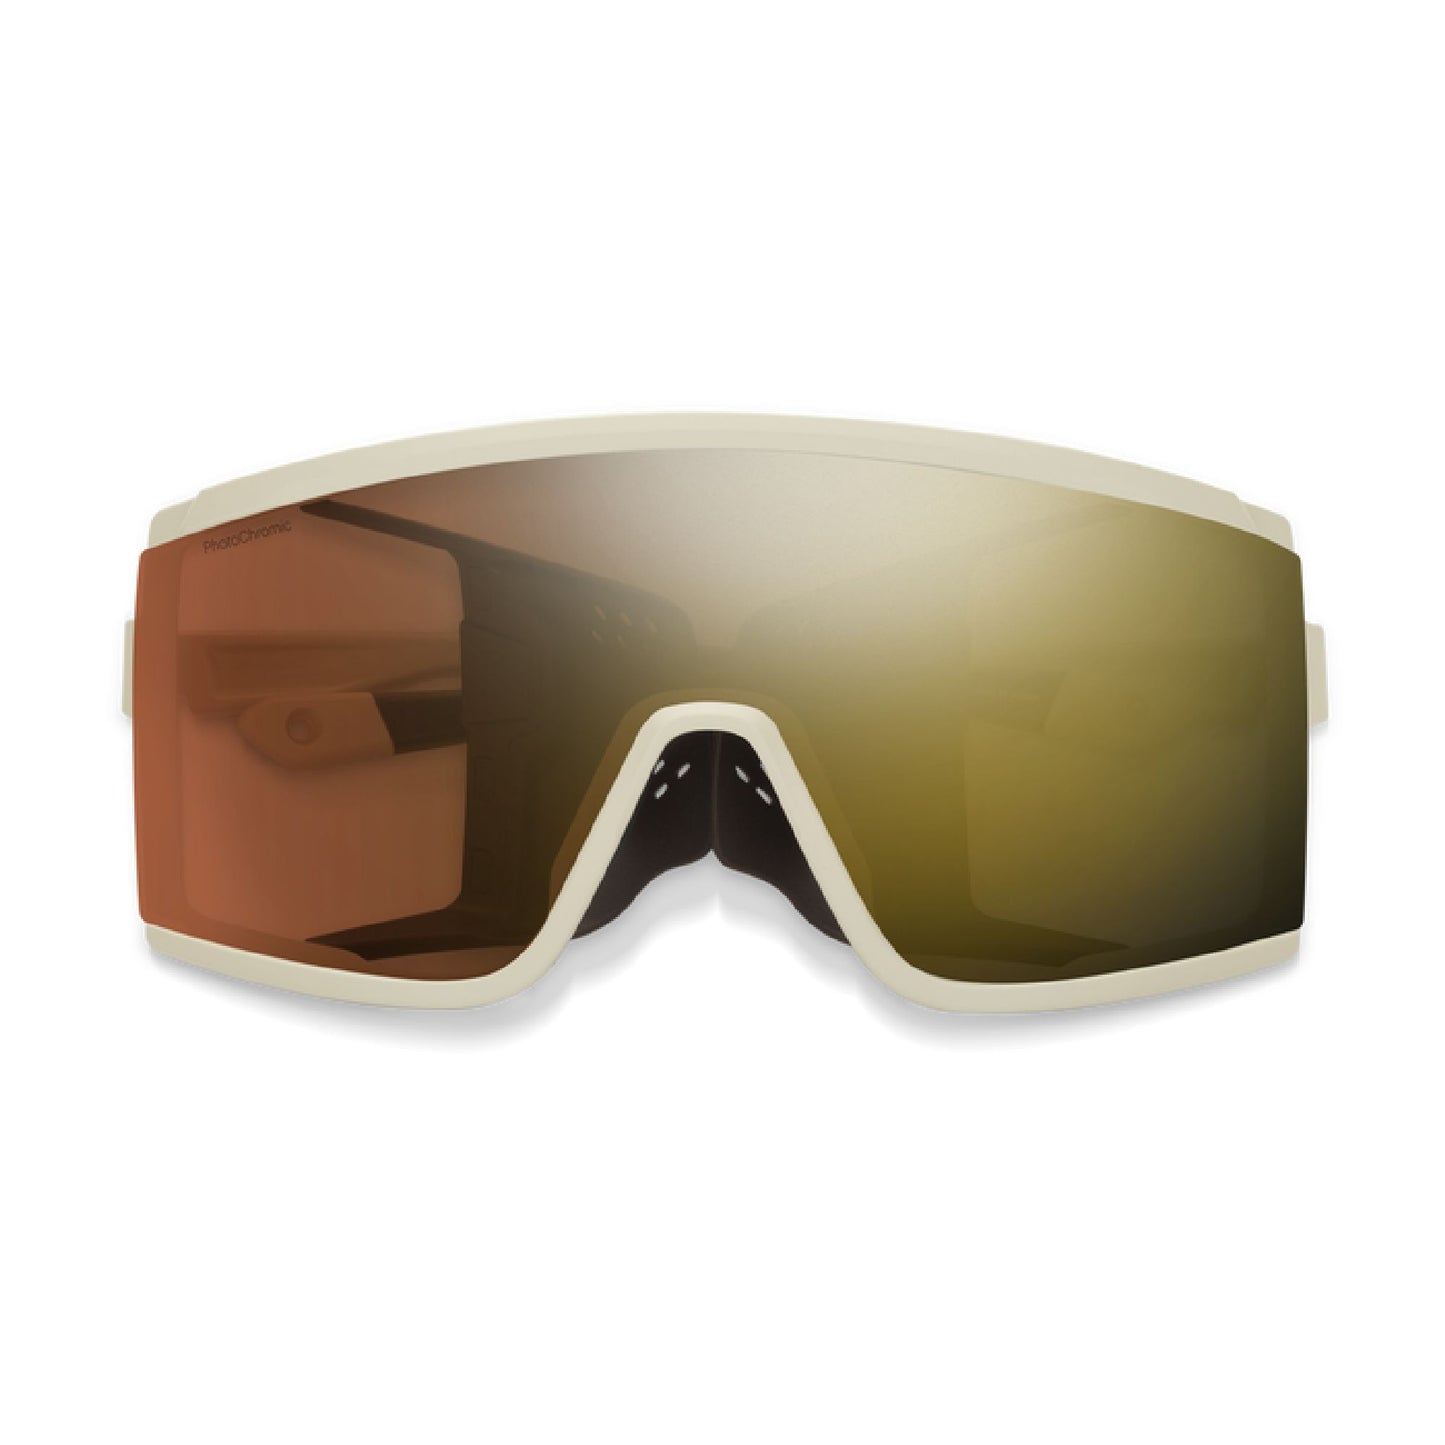 Smith Pursuit Sunglasses CT Matte Bone ChromaPop Glacier Photochromic Copper Gold Mirror Lens Sunglasses